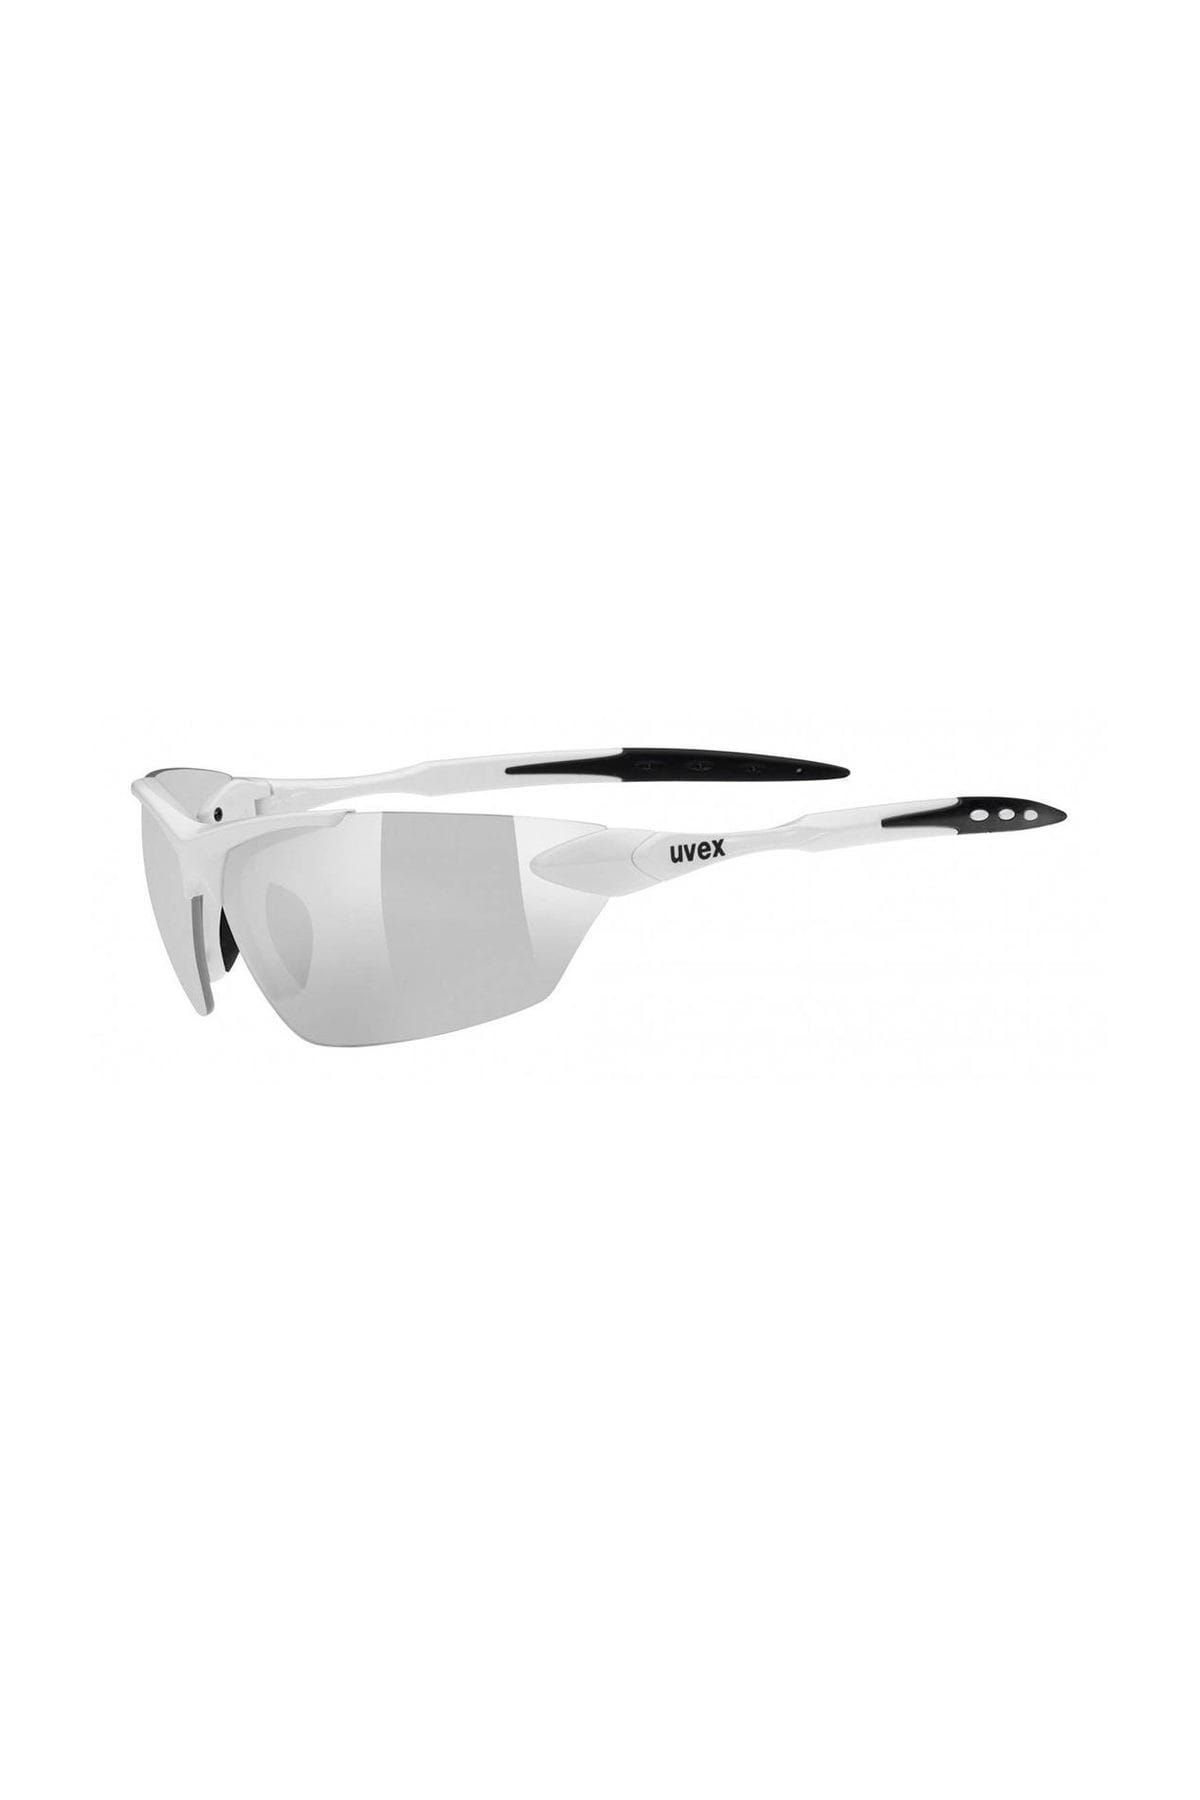 Uvex Sportstyle 203 Güneş Gözlüğü Beyaz/Gümüş